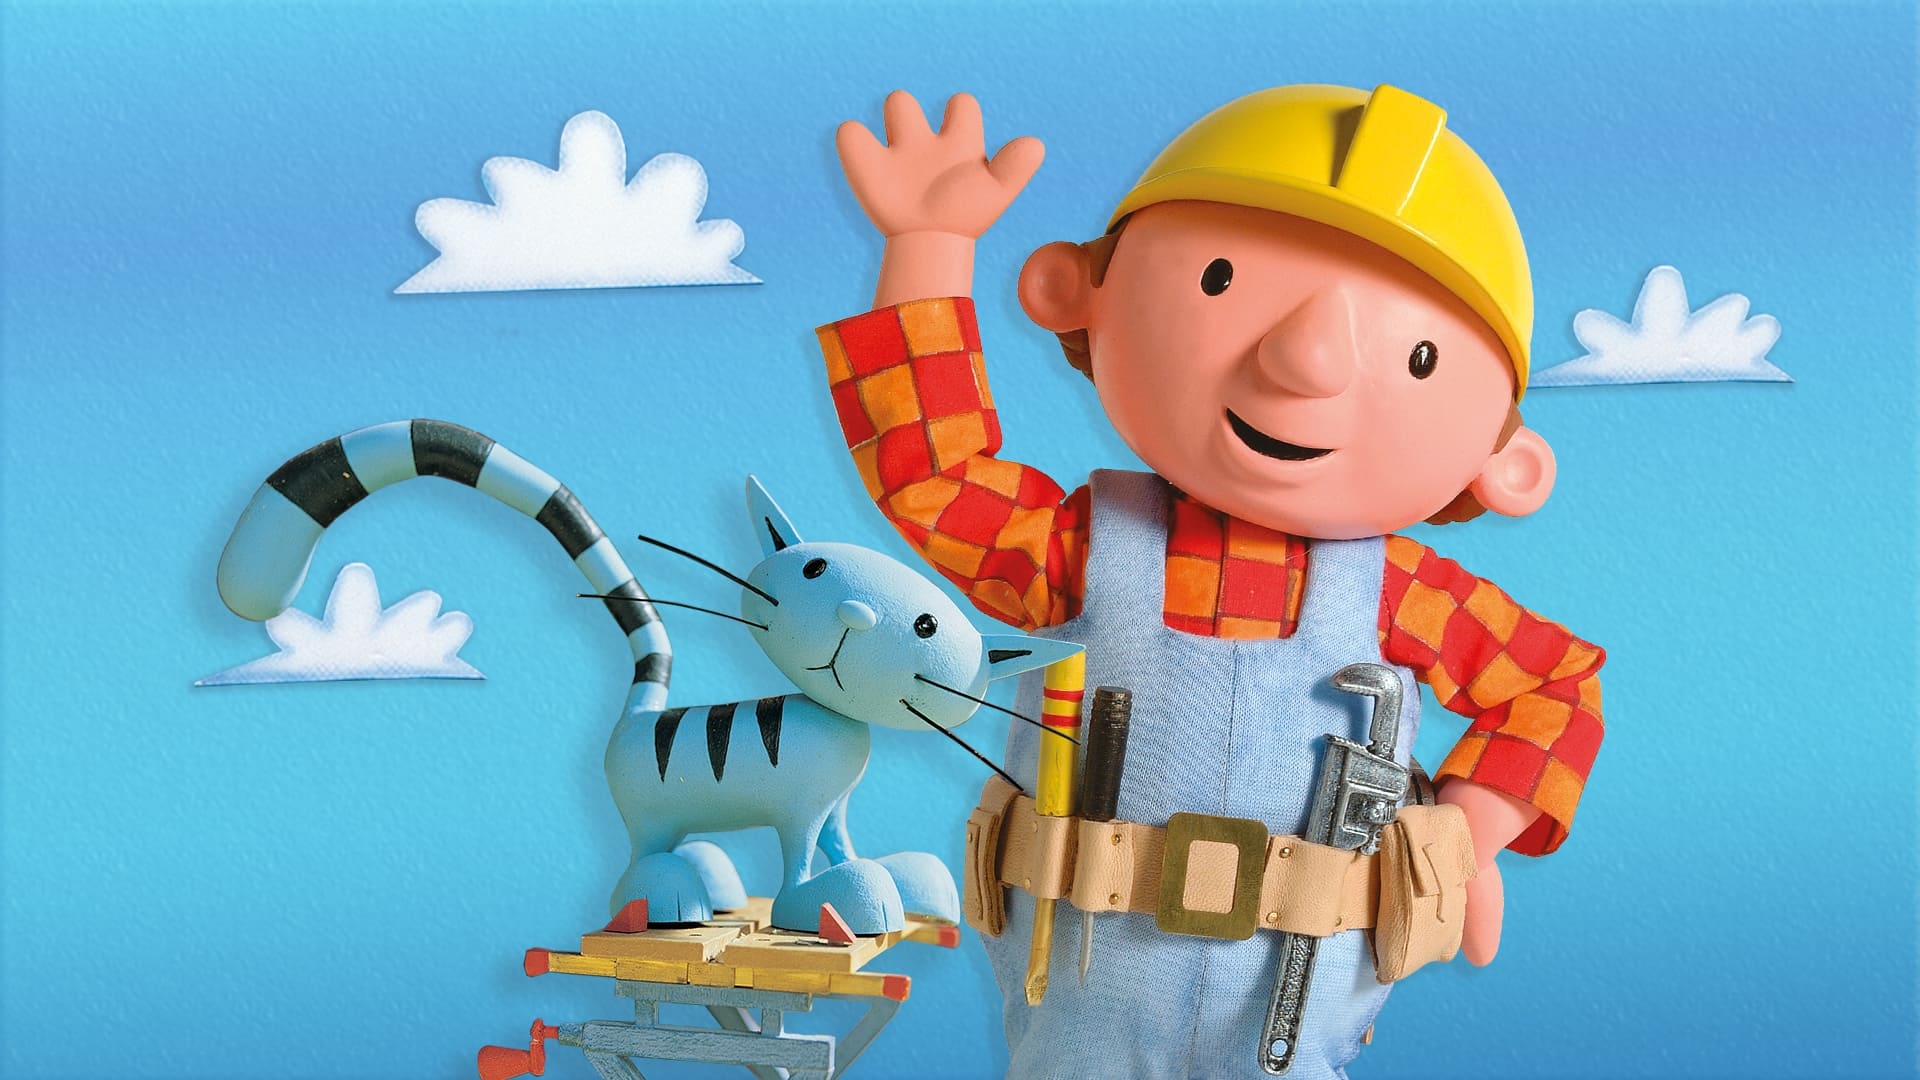 Bob the Builder - Season 20 Episode 27